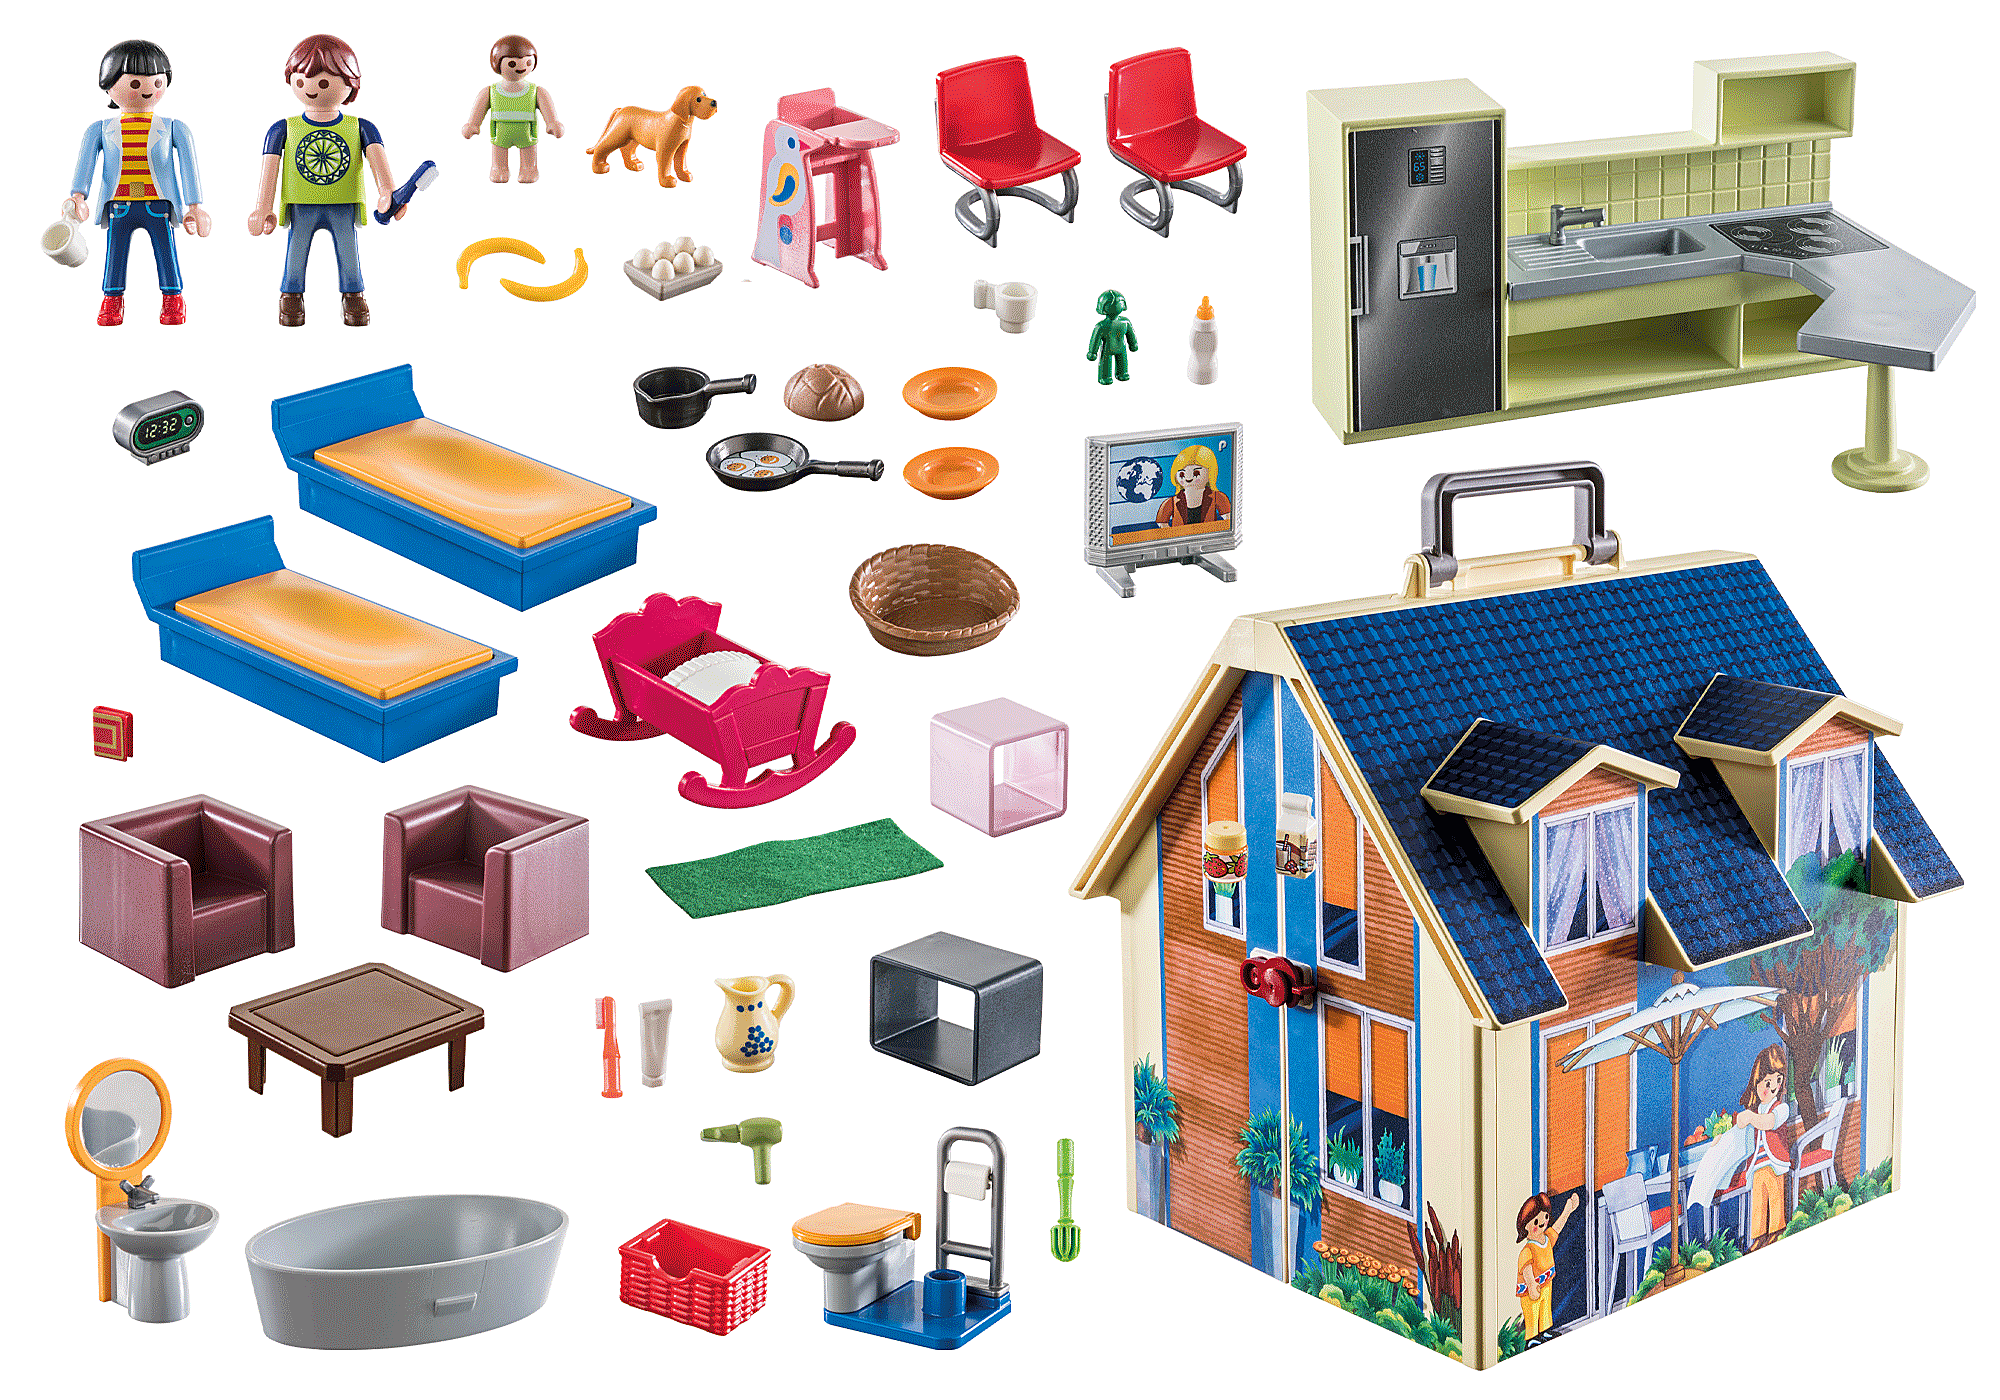 Ma maison de poupée transportable - Playmobil Maisons et